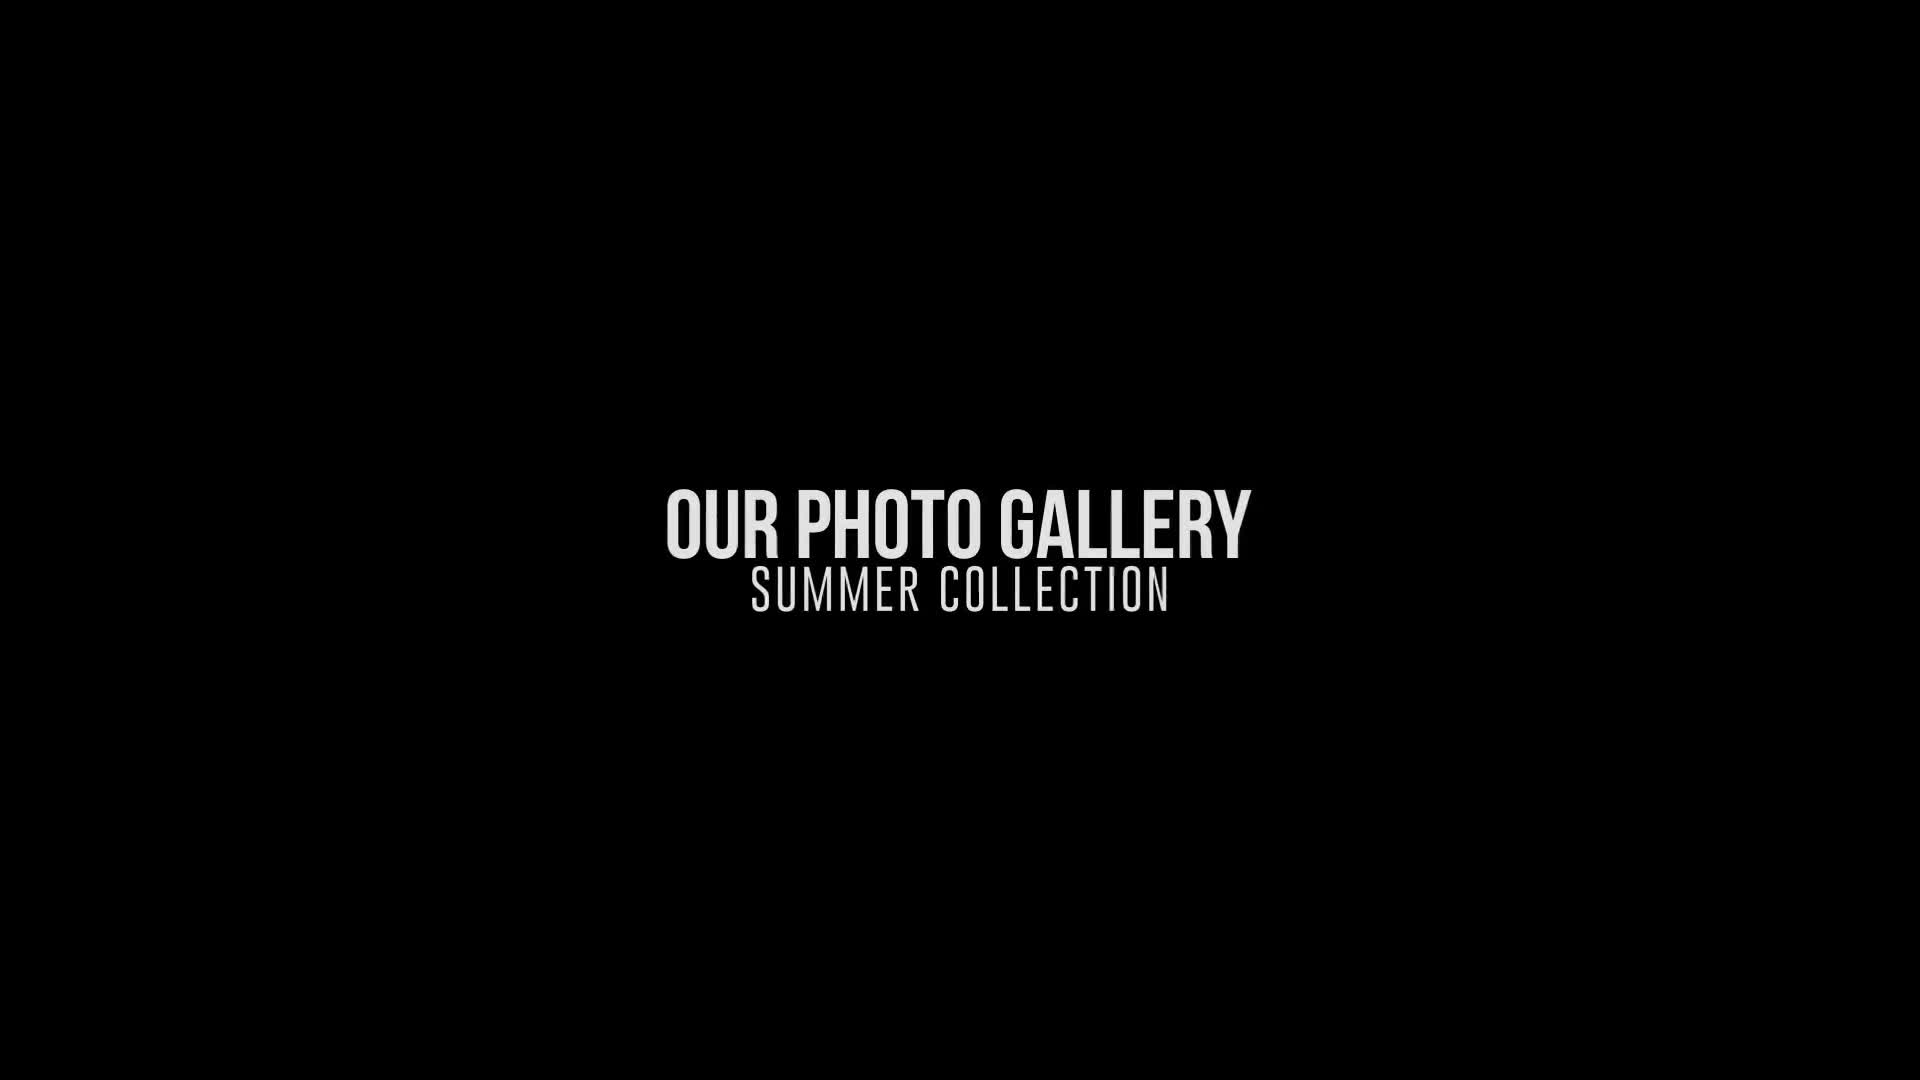 Elegant Photo Gallery Premiere Pro Videohive 41973644 Premiere Pro Image 1